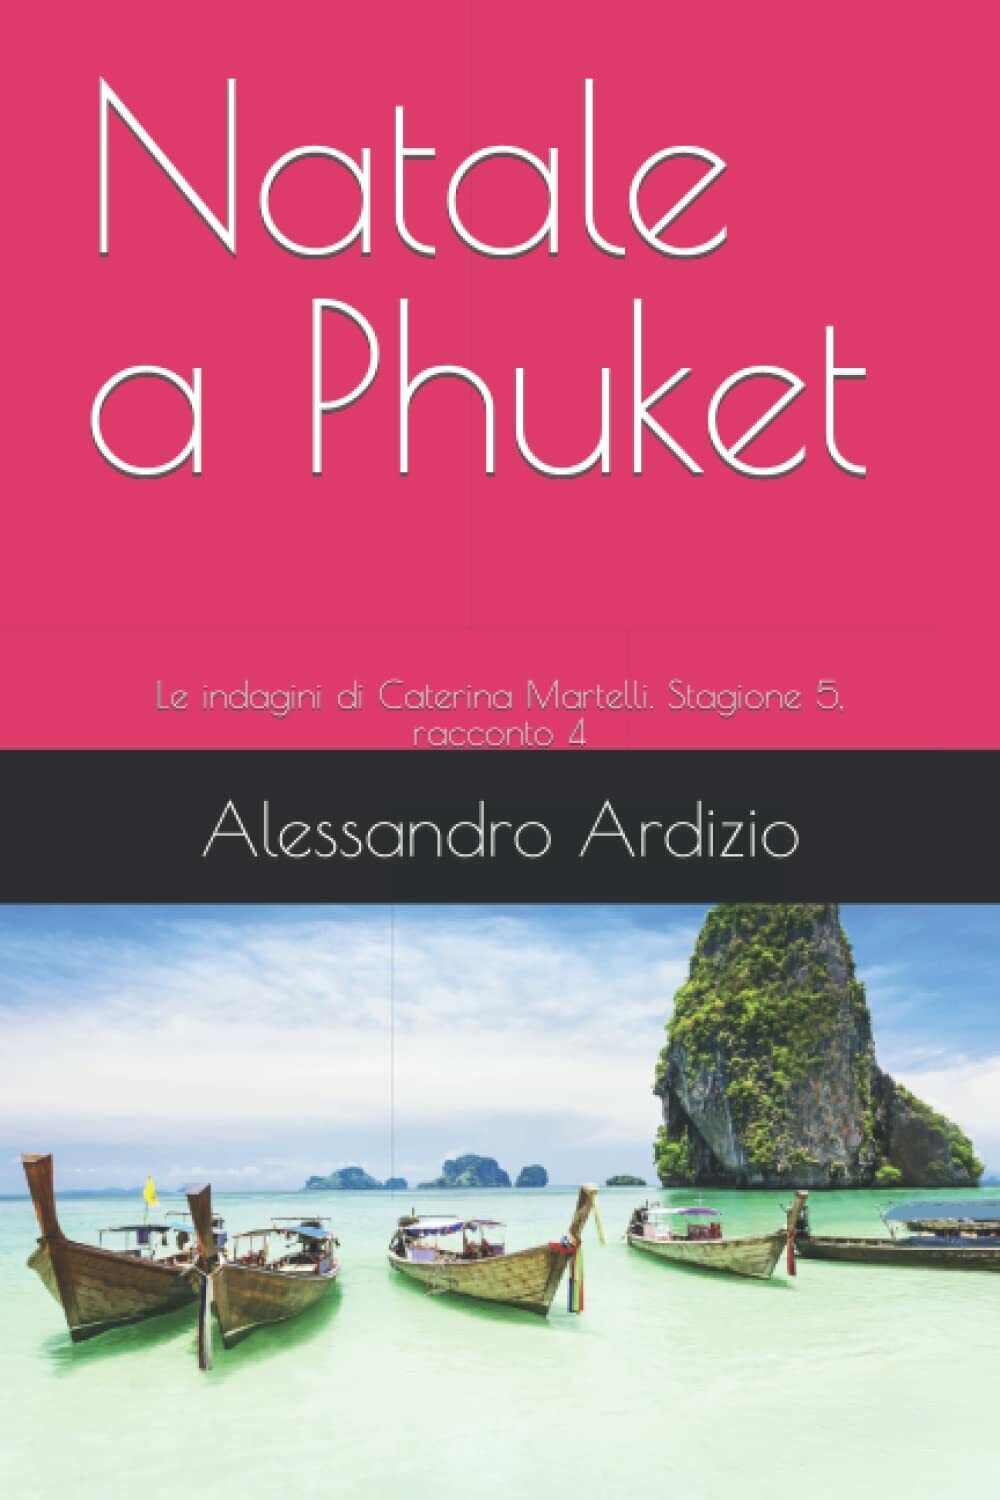 Natale a Phuket: Le indagini di Caterina Martelli. Stagione 5, racconto 4 di Ale libro usato